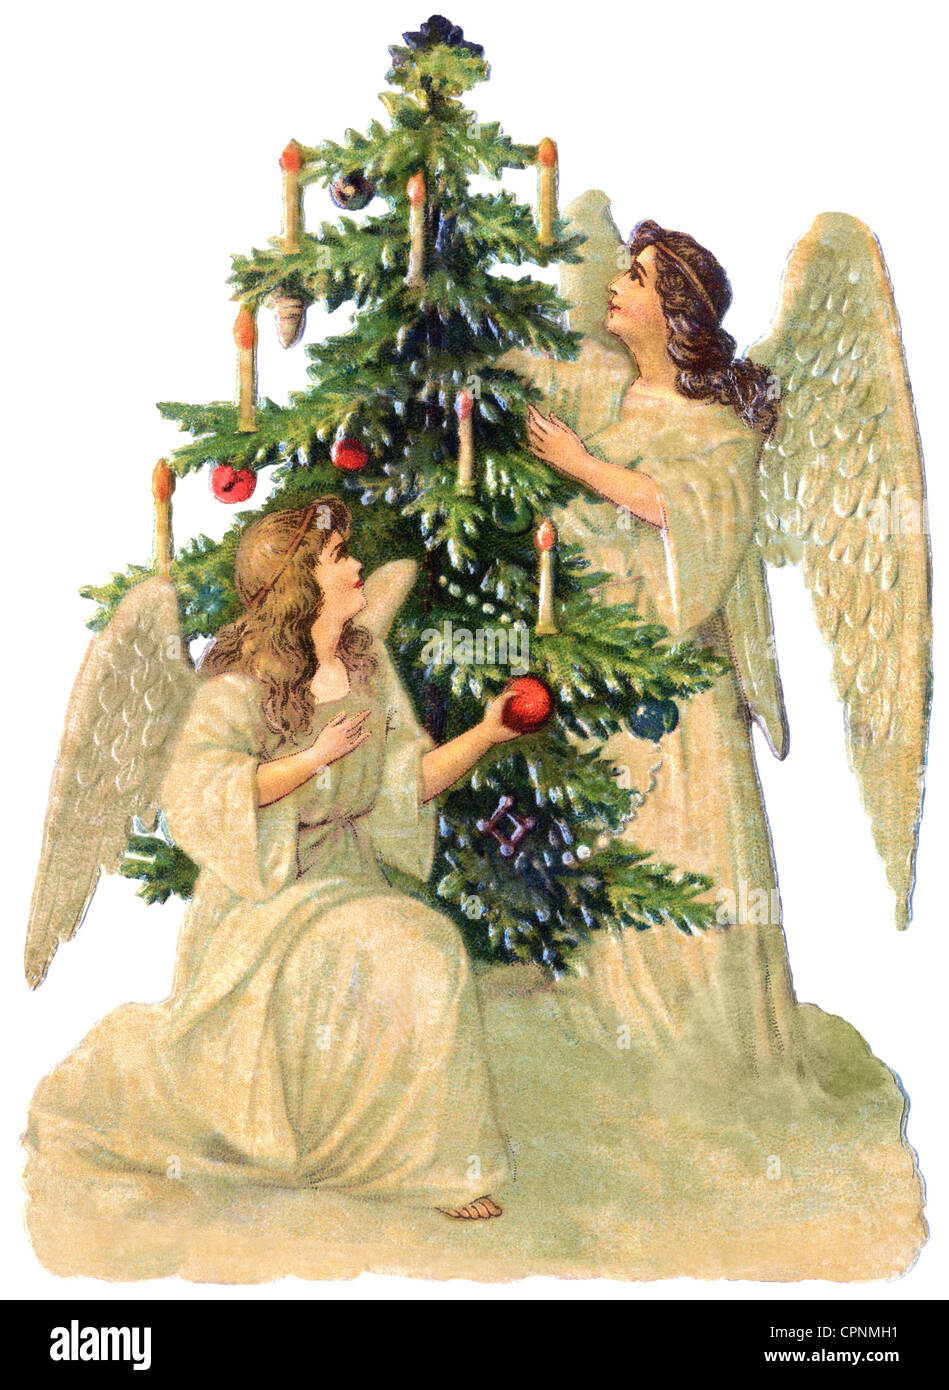 Weihnachten, Weihnachtsengel, zwei Engel, die den Weihnachtsbaum schmücken, Lithographie, Deutschland, um 1900, Zusatzrechte-Clearences-nicht vorhanden Stockfoto